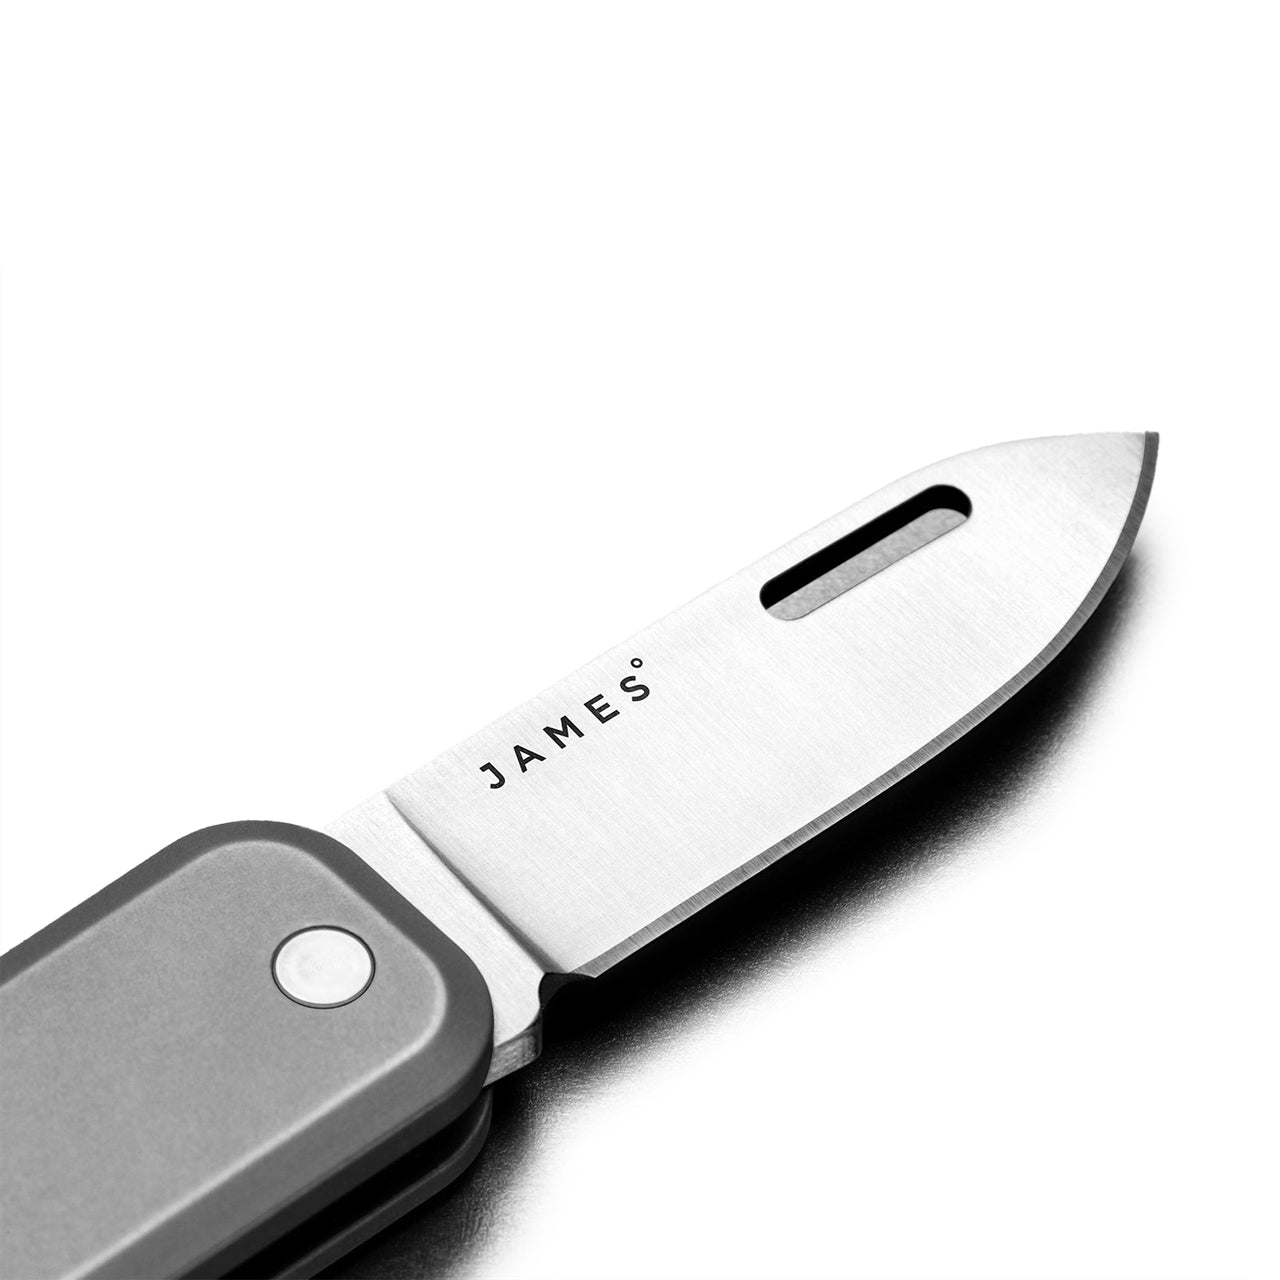 James Brand Elko Knife